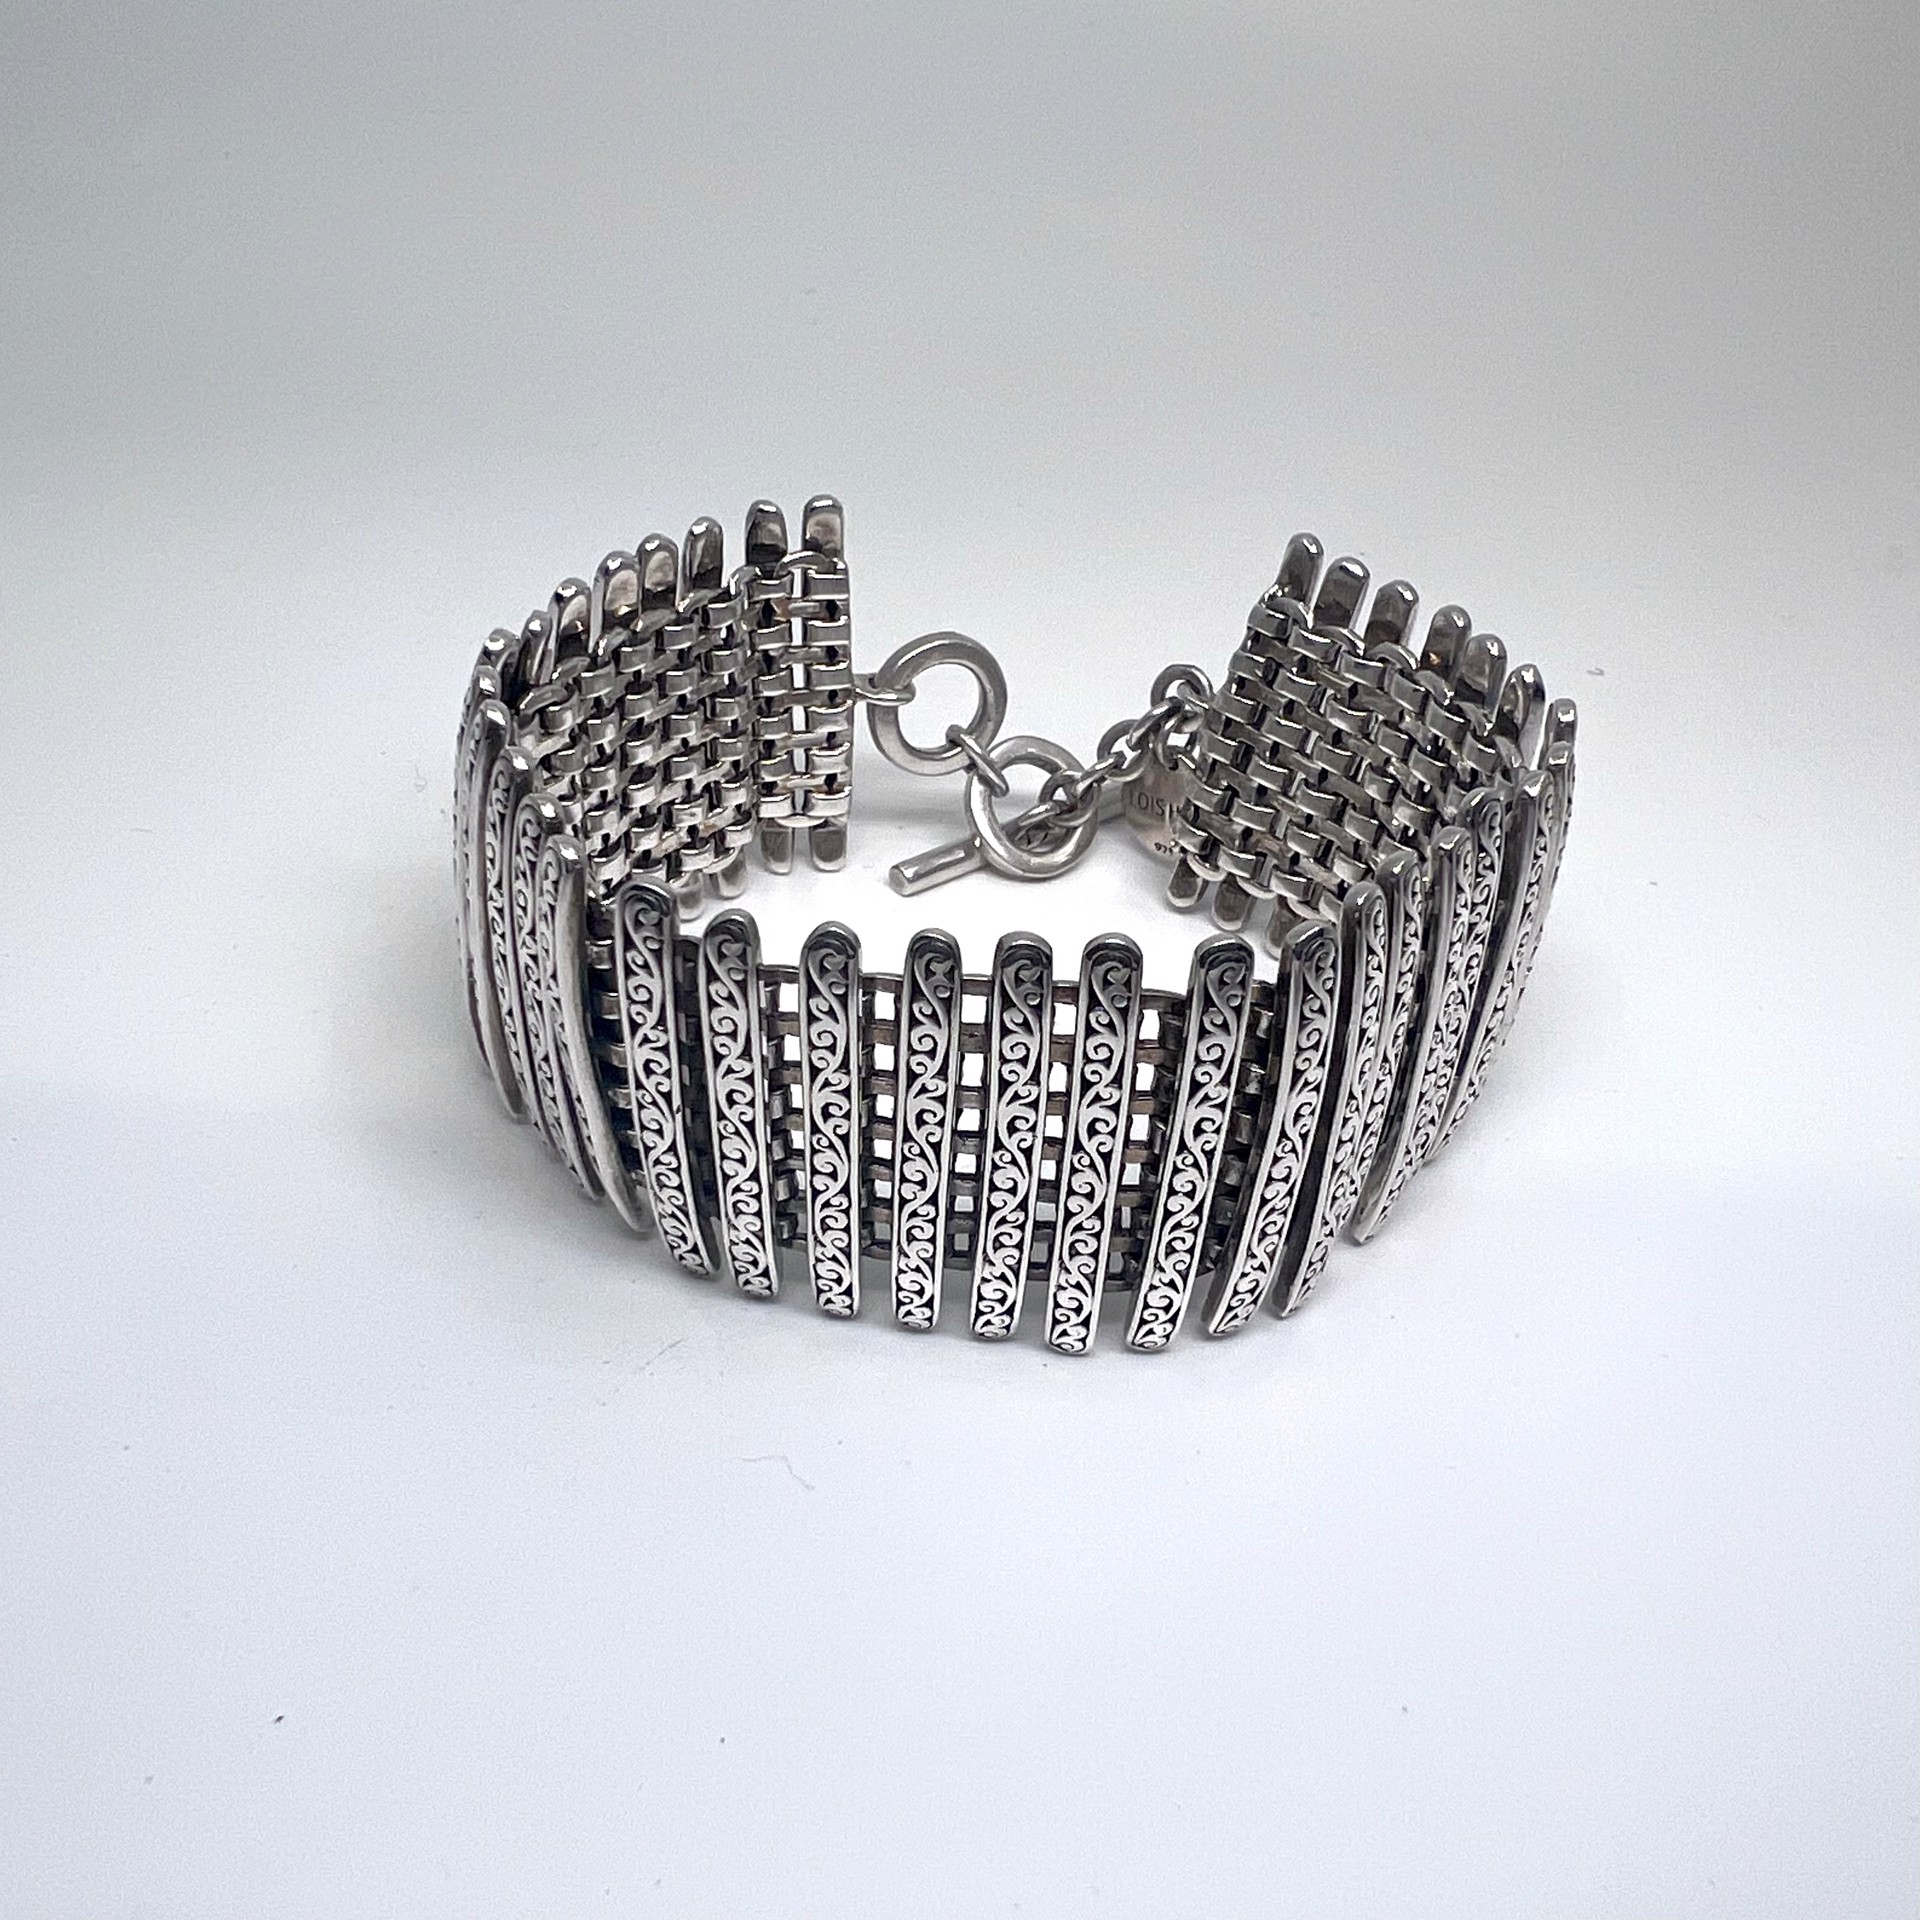 1025 Weave Bracelet by Lois Hill